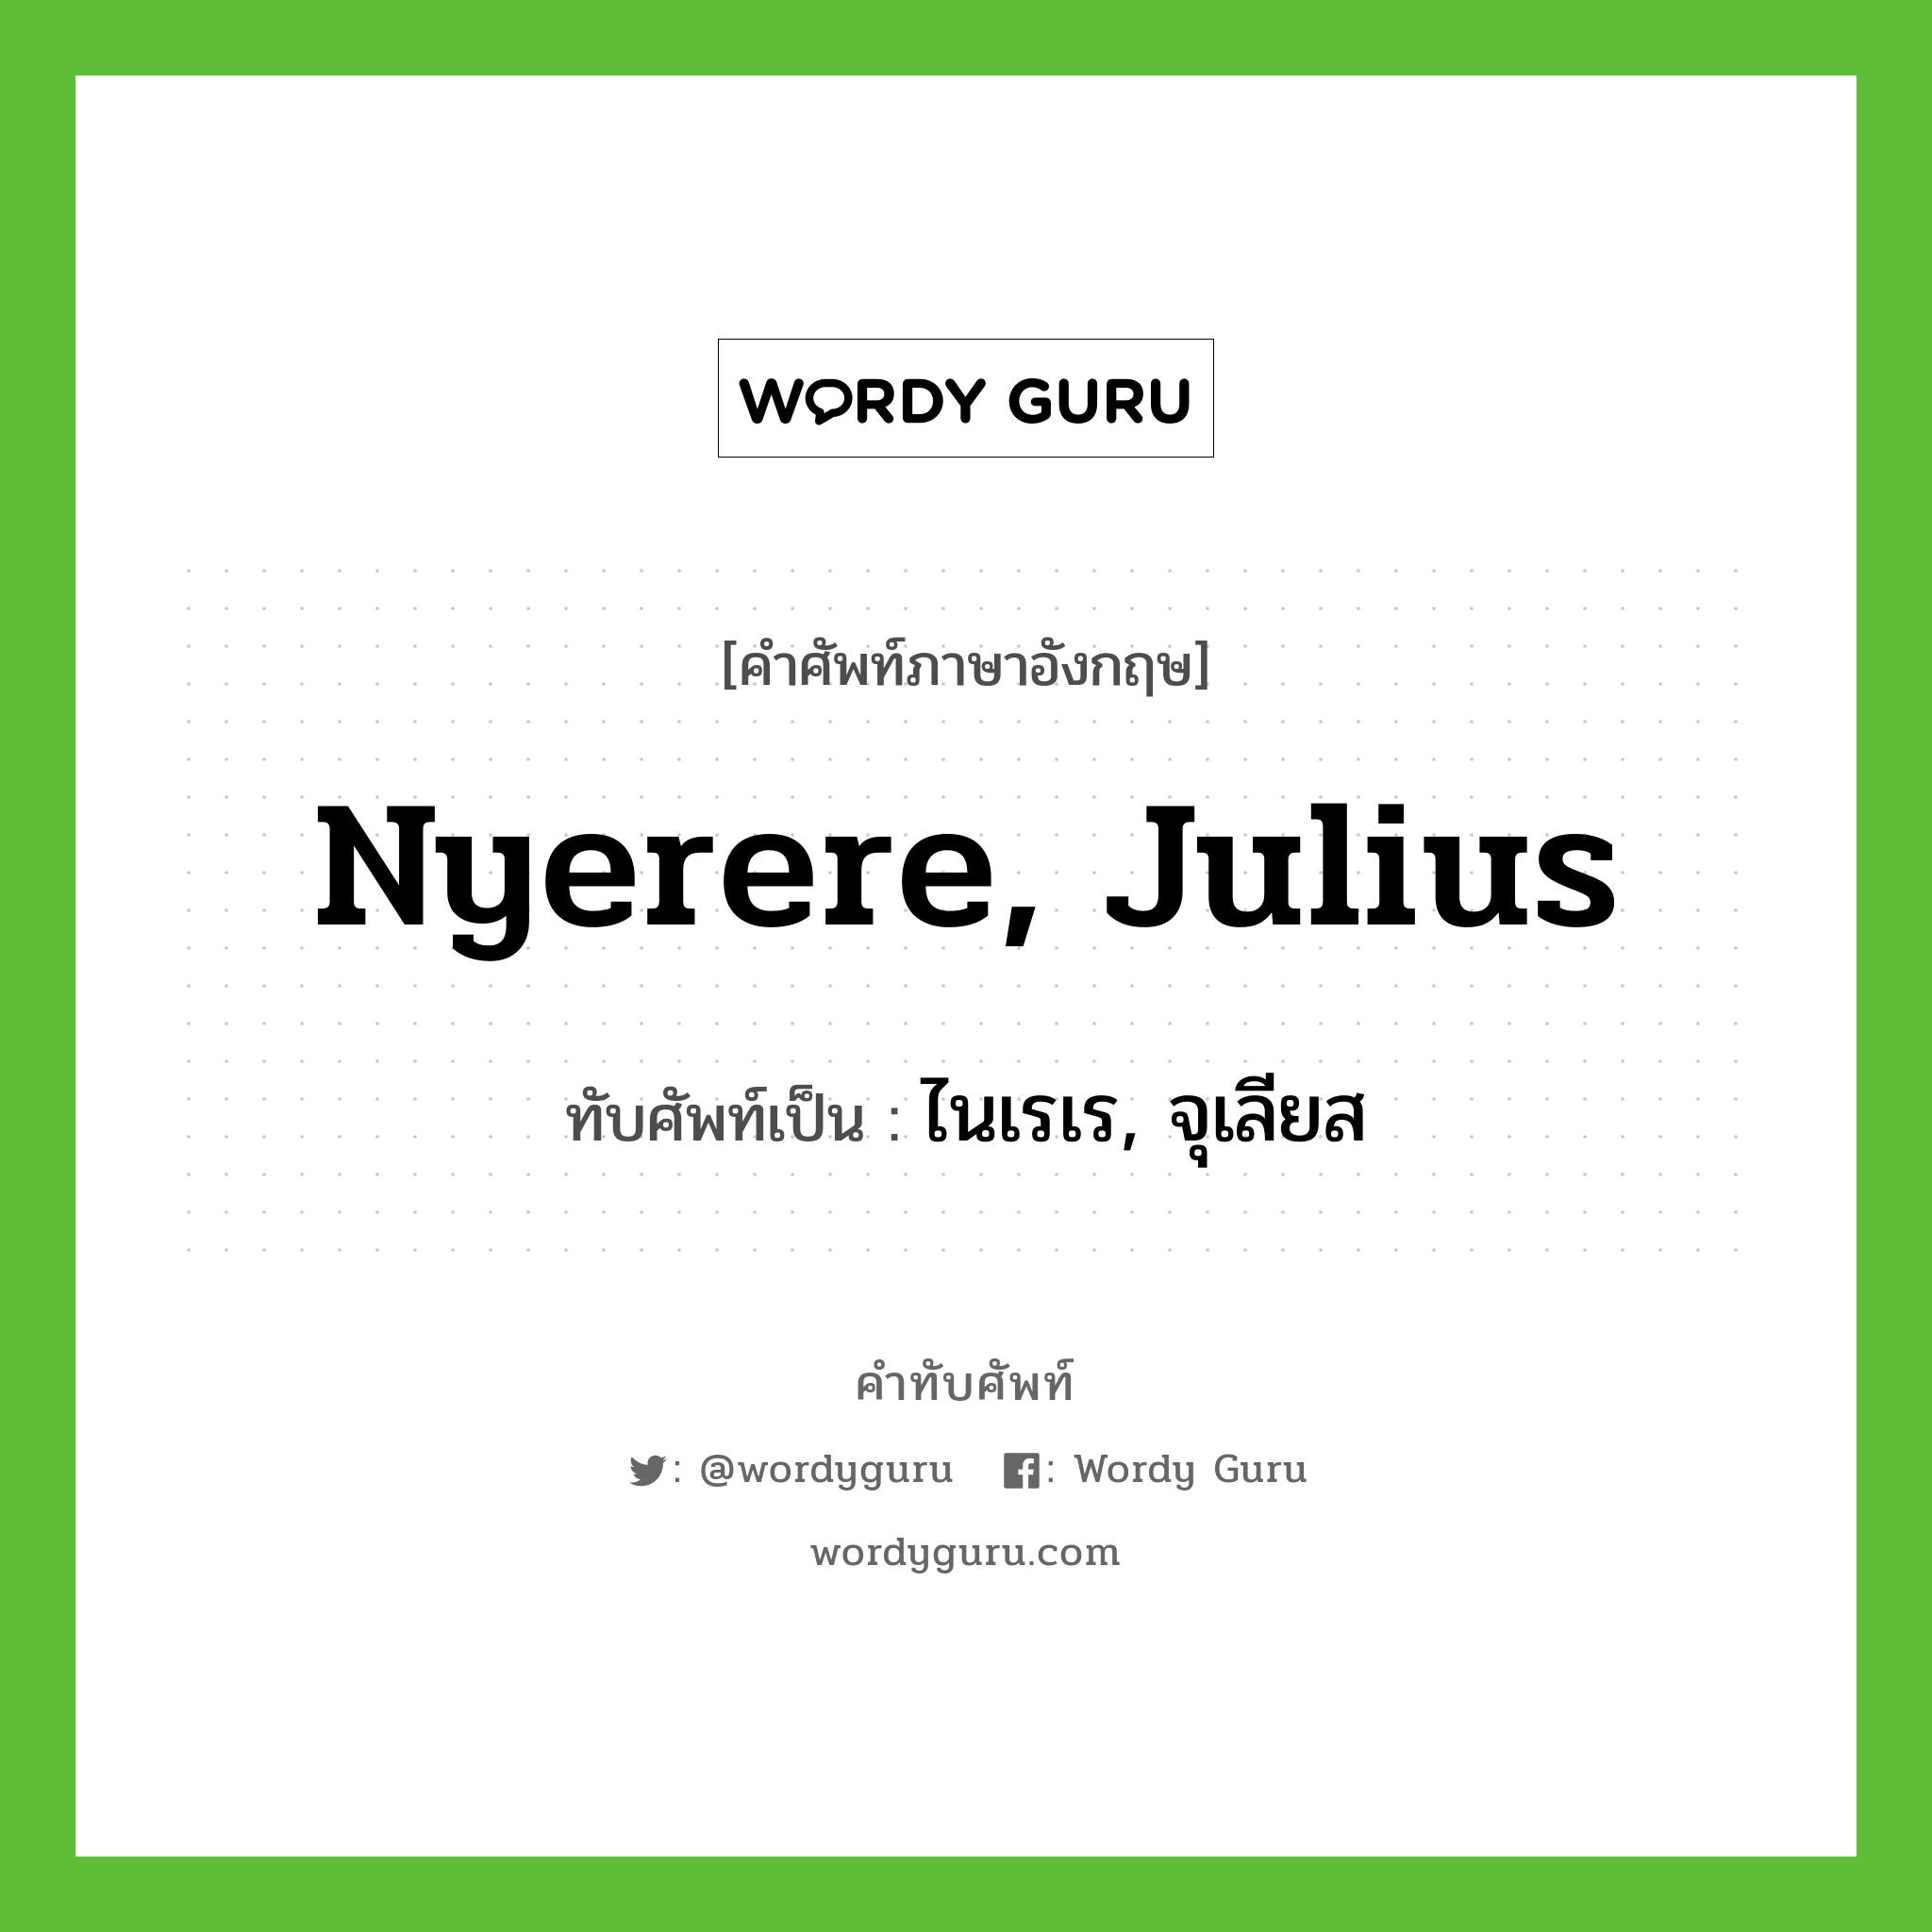 Nyerere, Julius เขียนเป็นคำไทยว่าอะไร?, คำศัพท์ภาษาอังกฤษ Nyerere, Julius ทับศัพท์เป็น ไนเรเร, จุเลียส